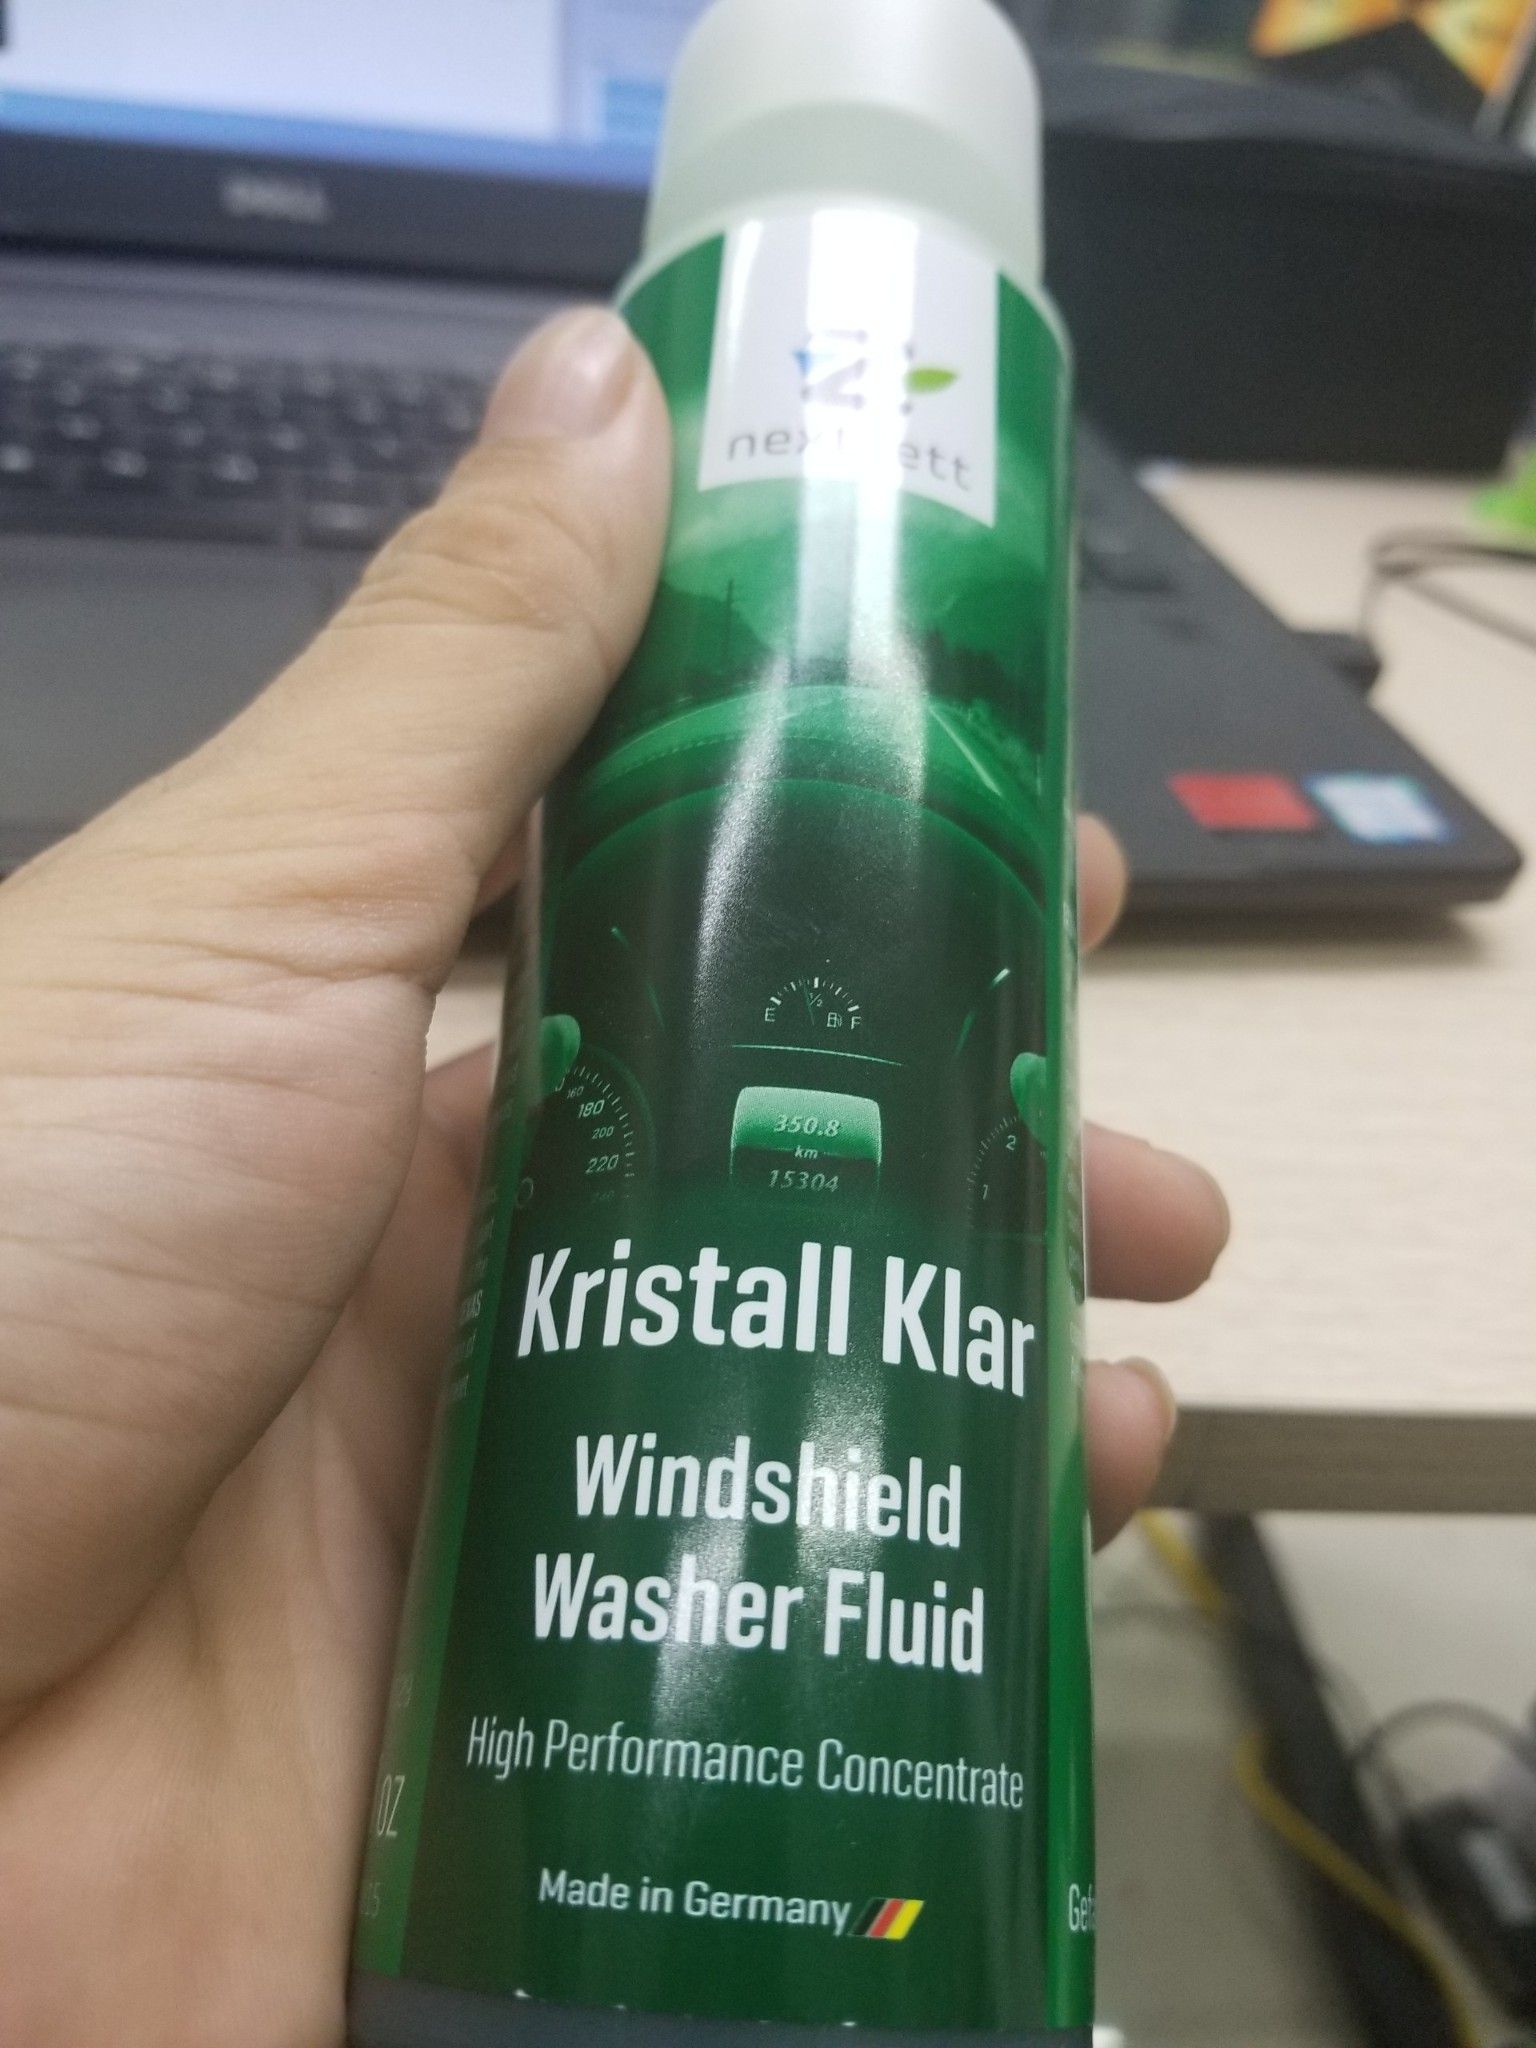 nextzett Kristall Klar Washer Fluid Concentrate